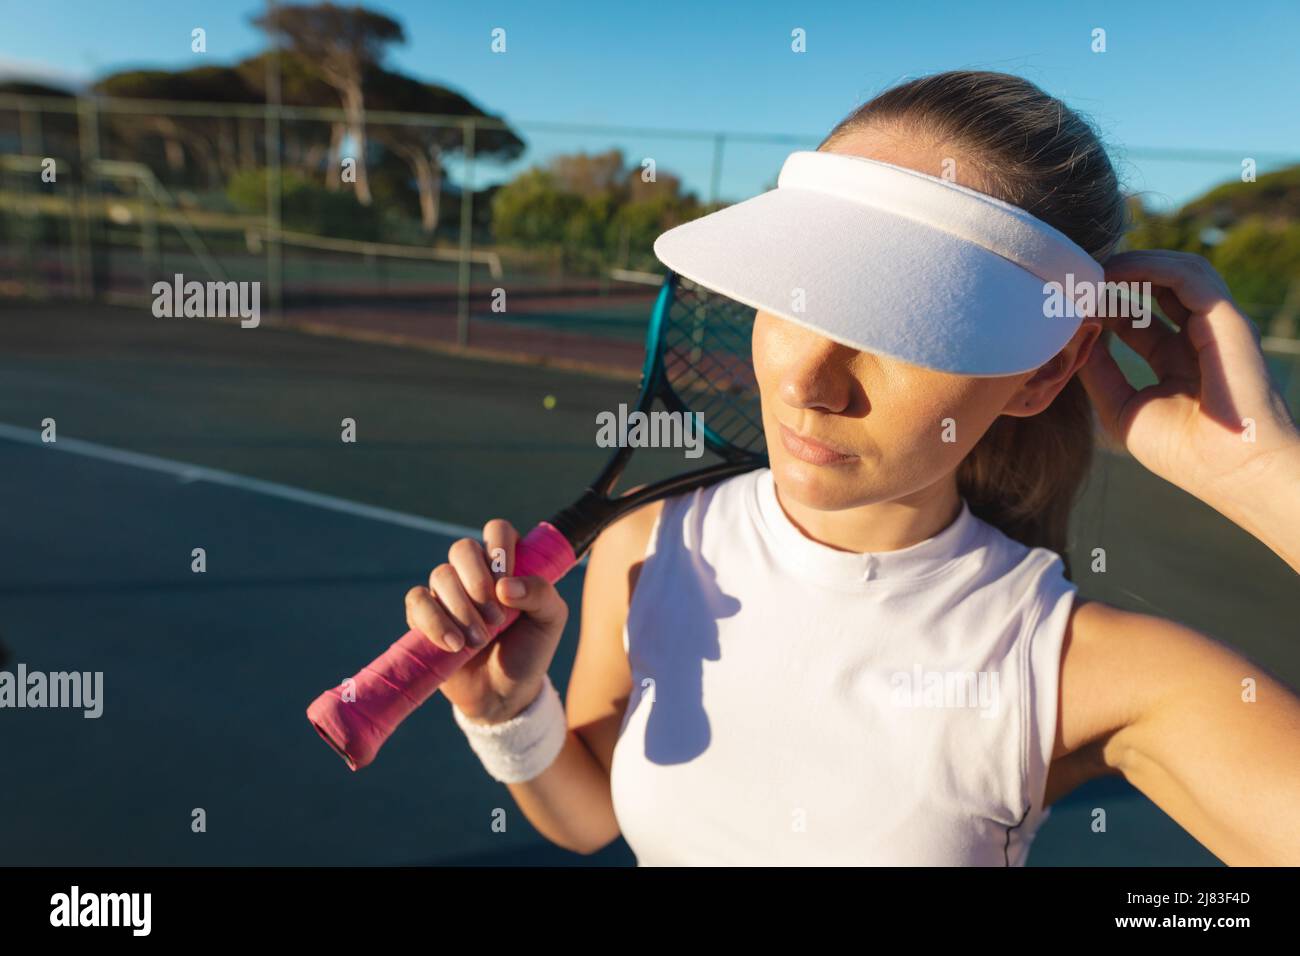 Visera de tenis fotografías imágenes resolución - Alamy